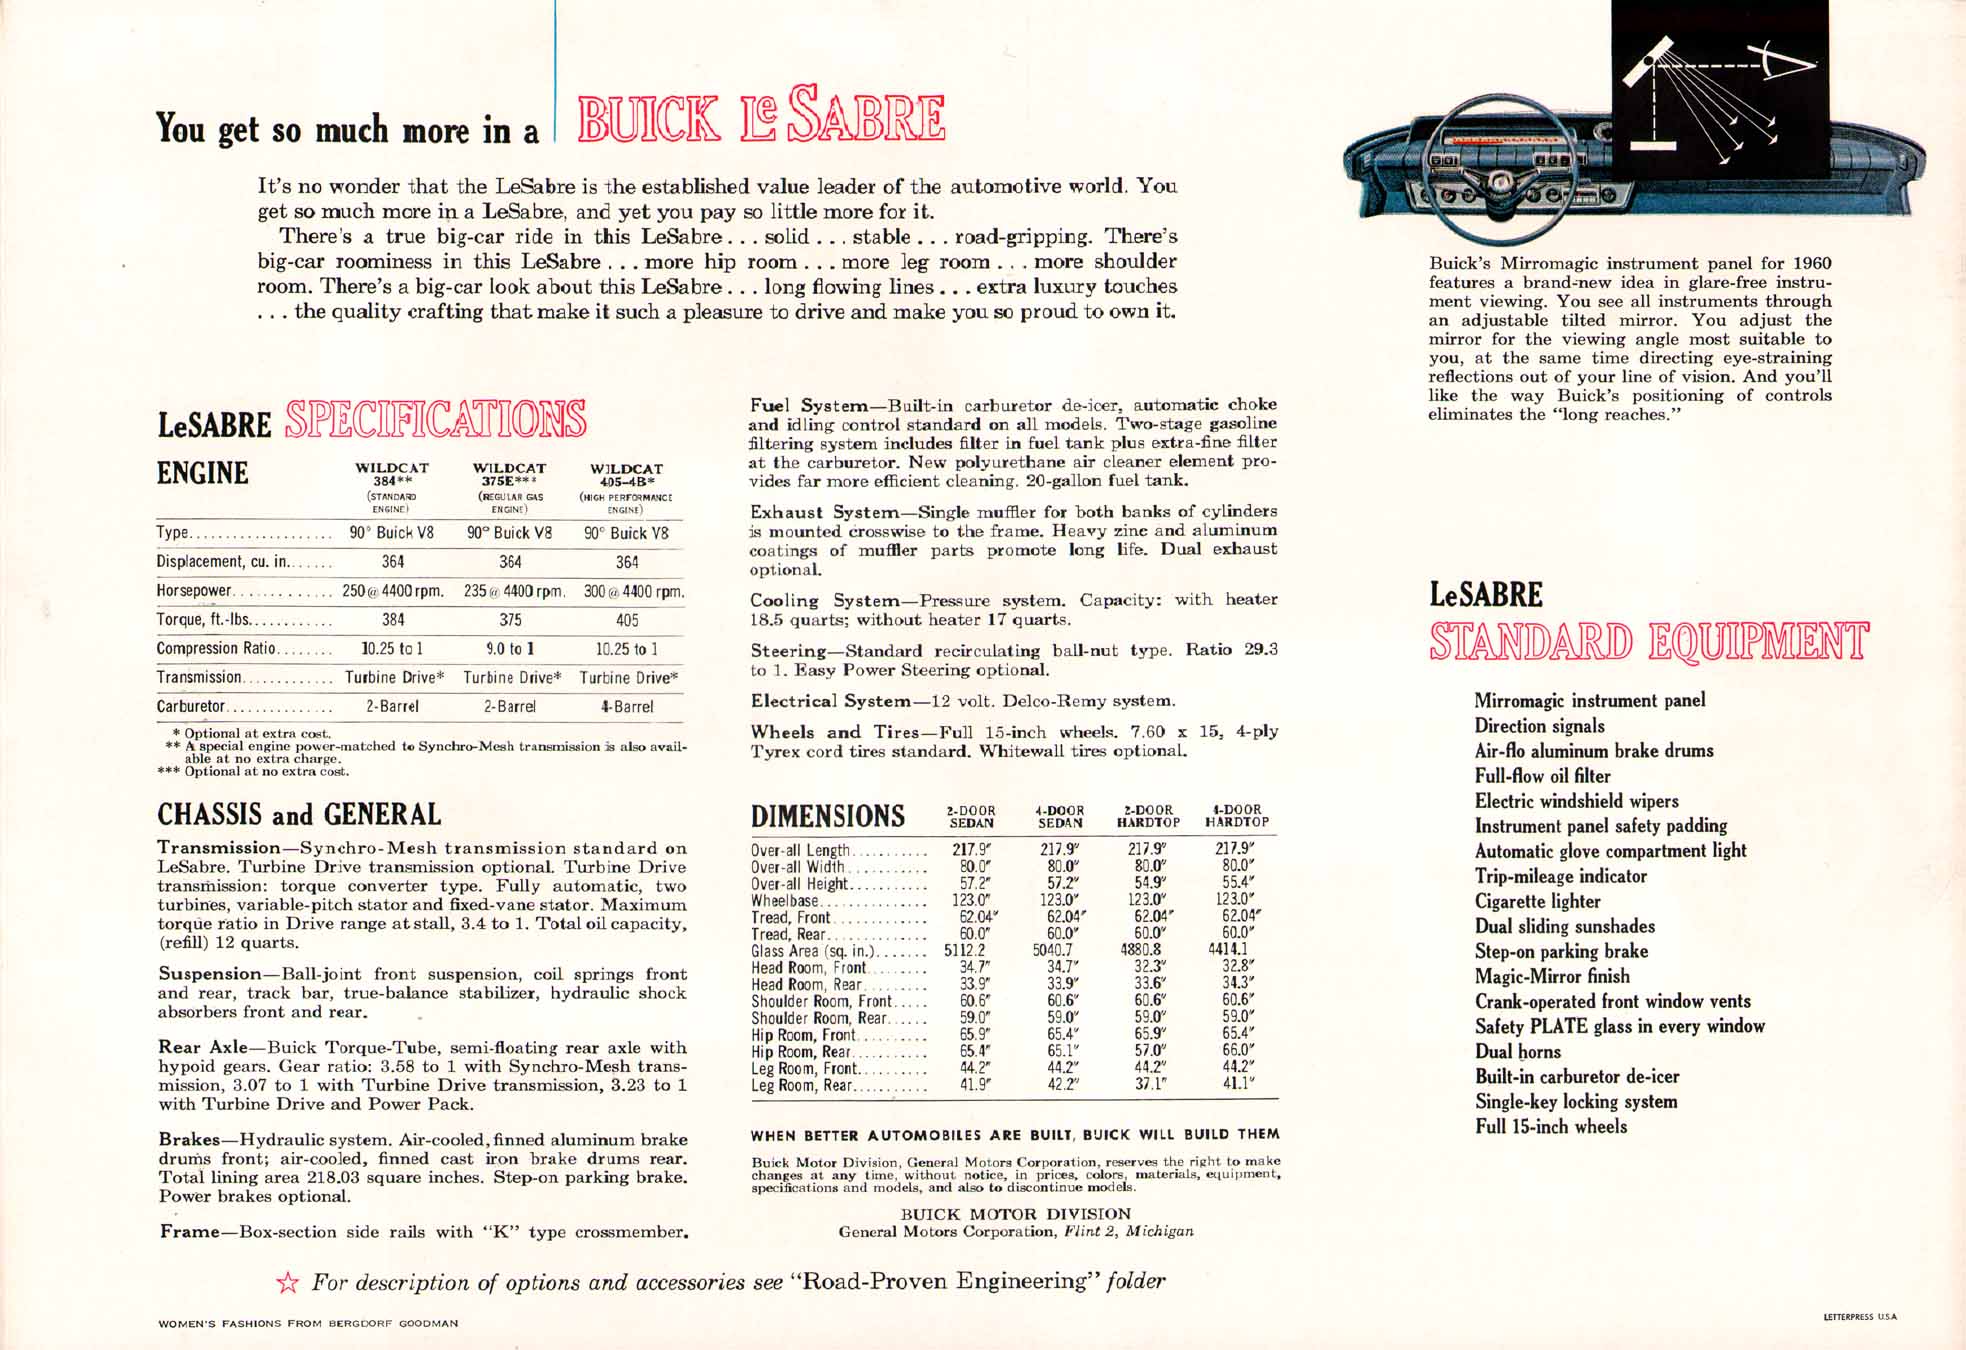 1960 Buick Prestige Portfolio-07